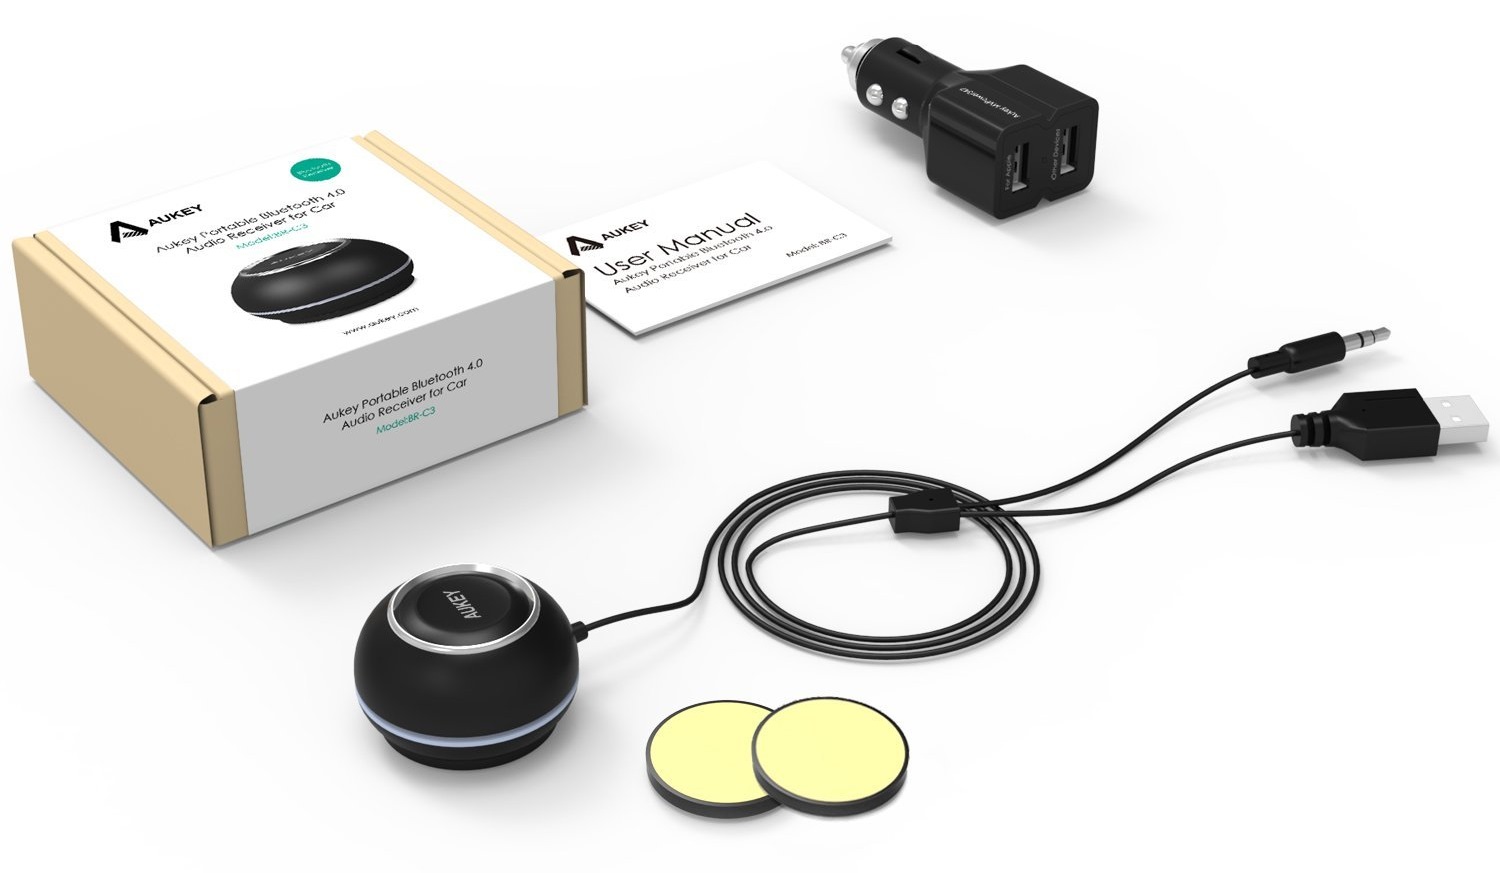 Recensione AUKEY BR-C3, kit vivavoce Bluetooth 4.0 per auto con